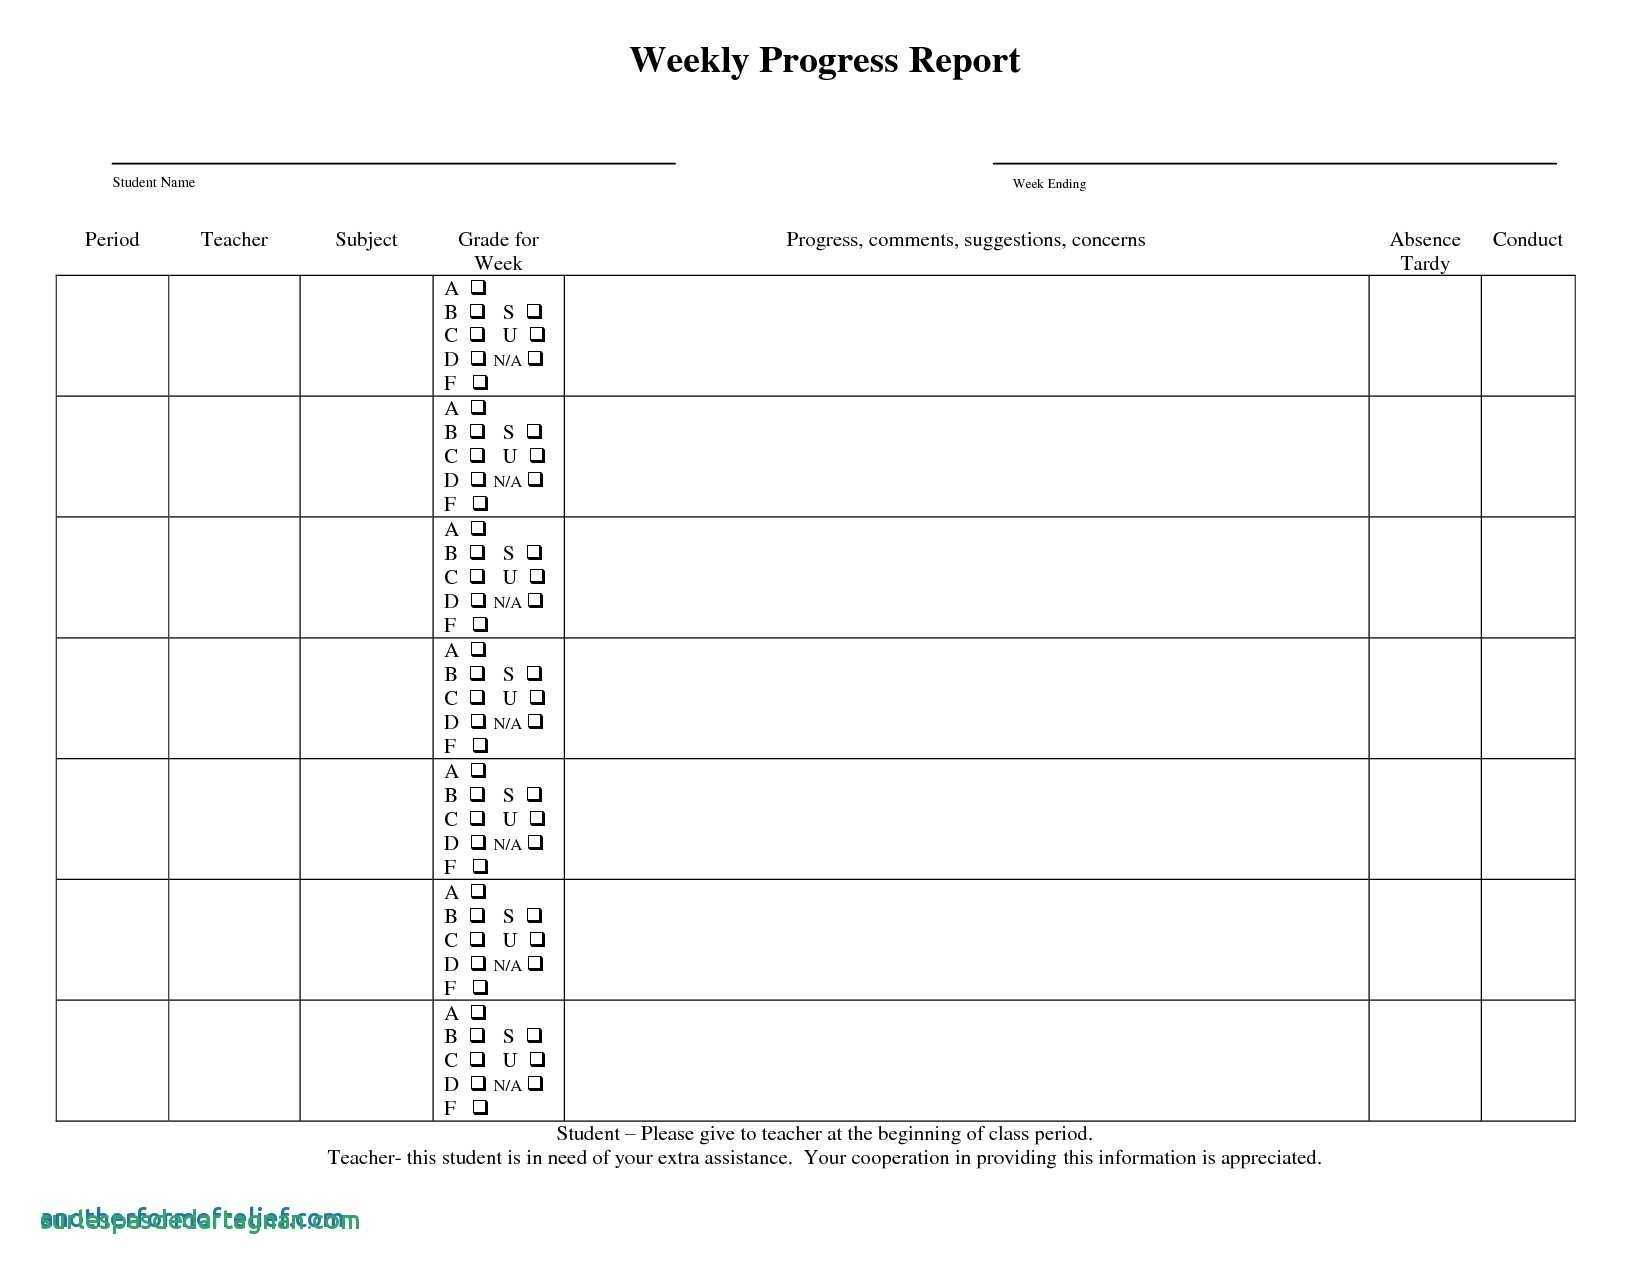 Summer School Progress Report Template - Atlantaauctionco In Summer School Progress Report Template